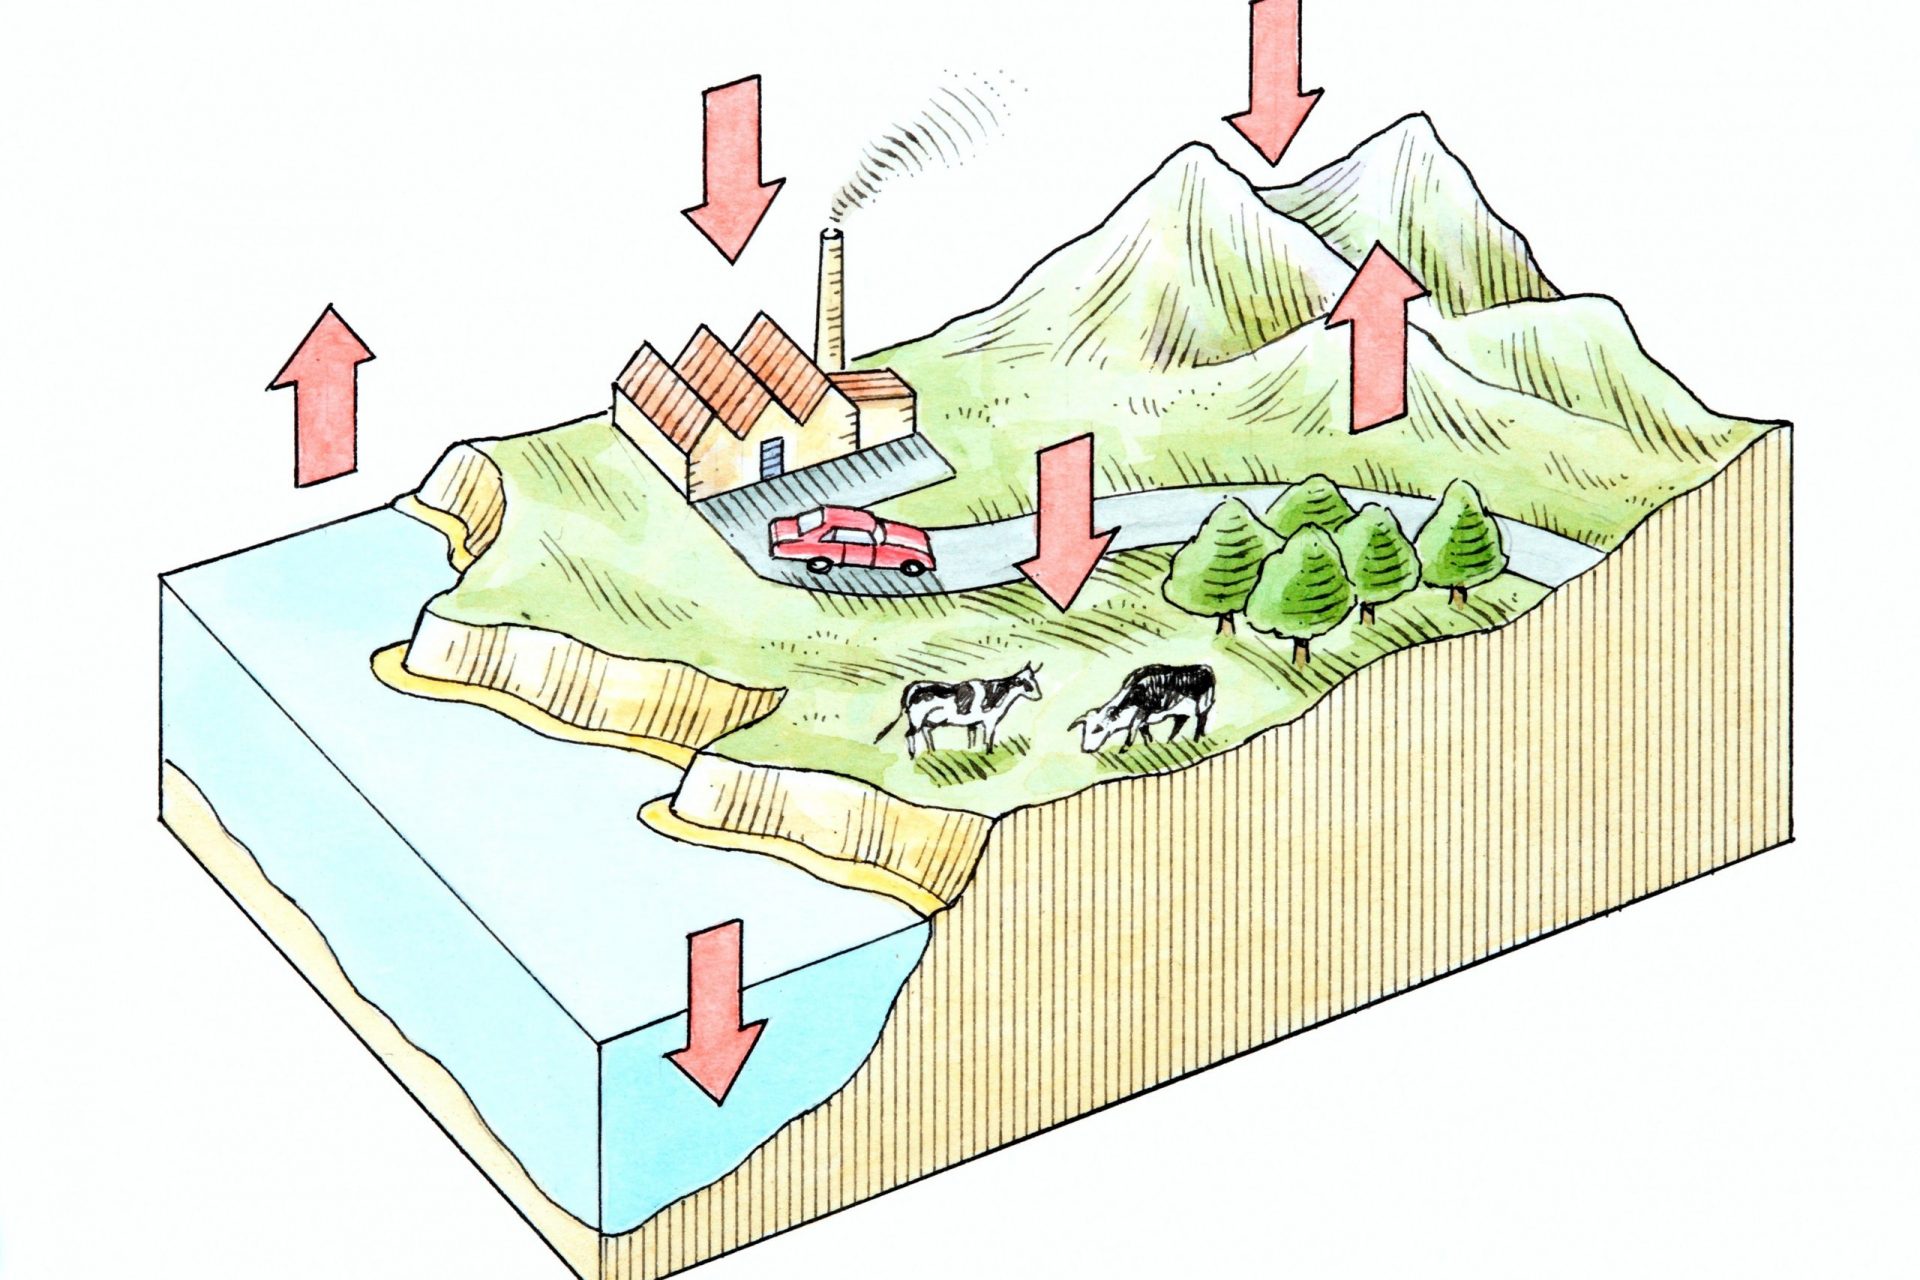 El ciclo del oxígeno mostrando la costa, las montañas y los bosques, además de las zonas rurales e industriales creadas por el hombre